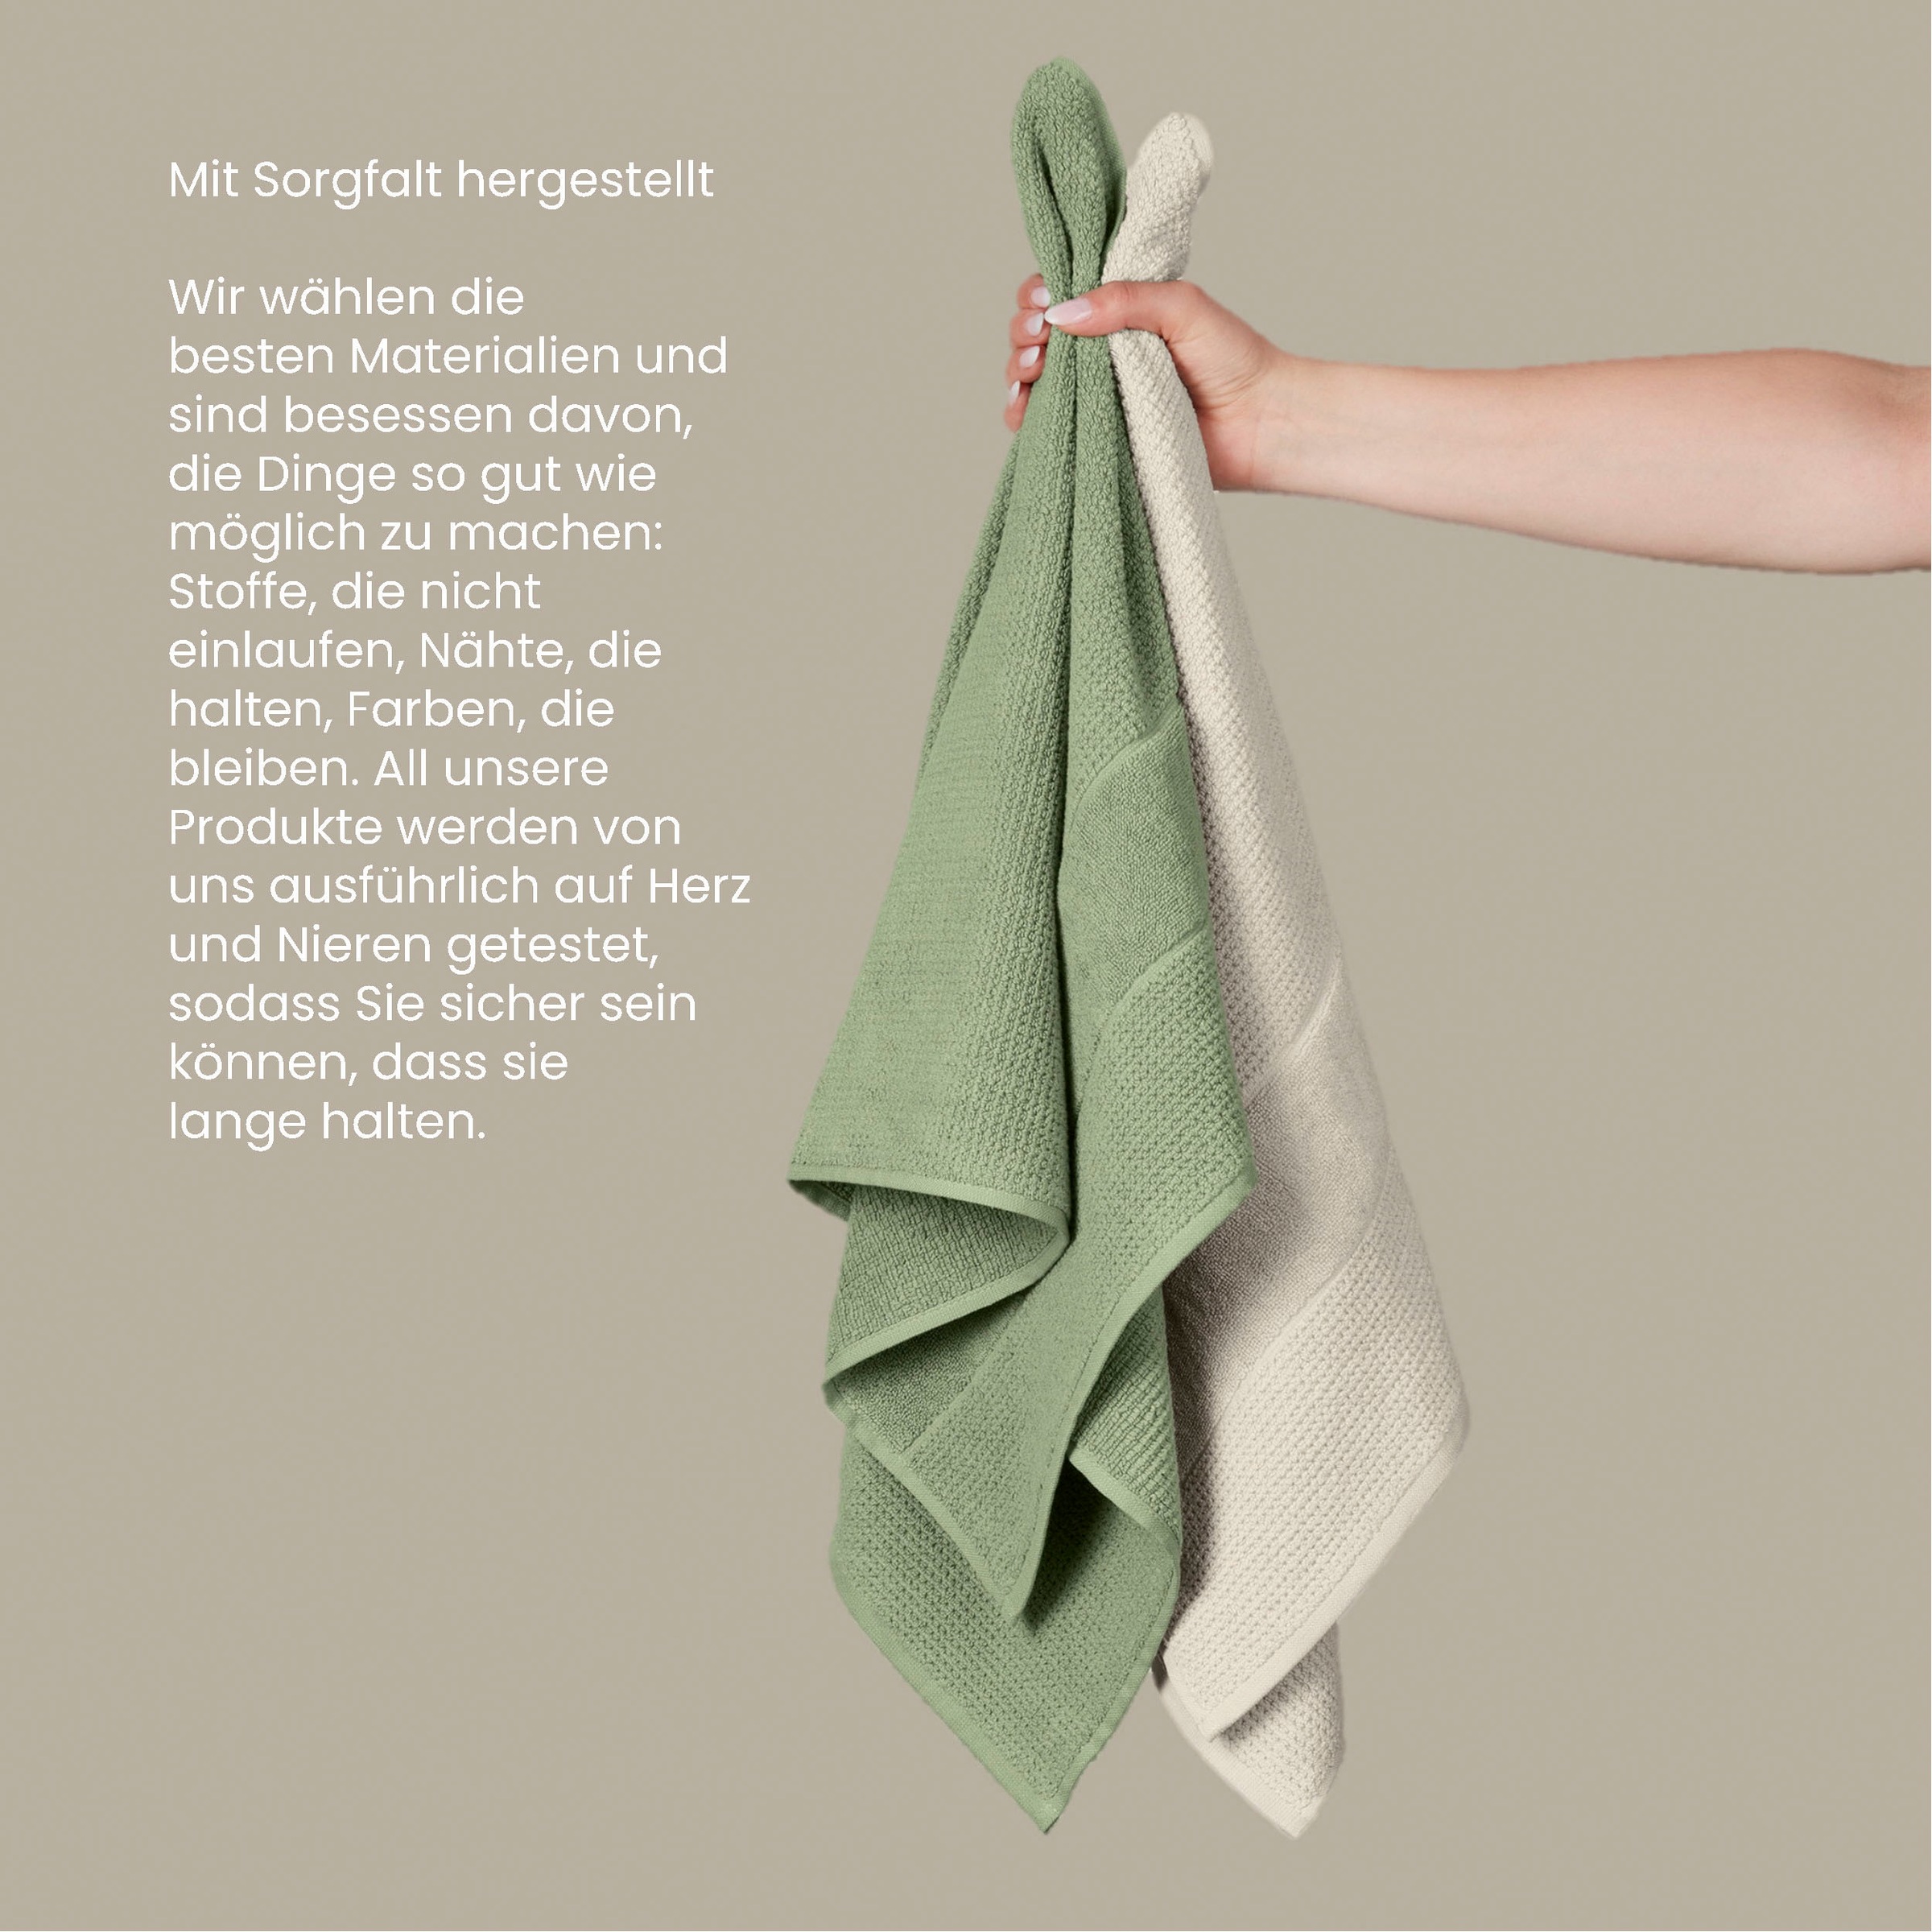 Schiesser Handtücher »Turin im 4er Set aus 100% Baumwolle«, (2 St.), Reiskorn-Optik, Made in Green